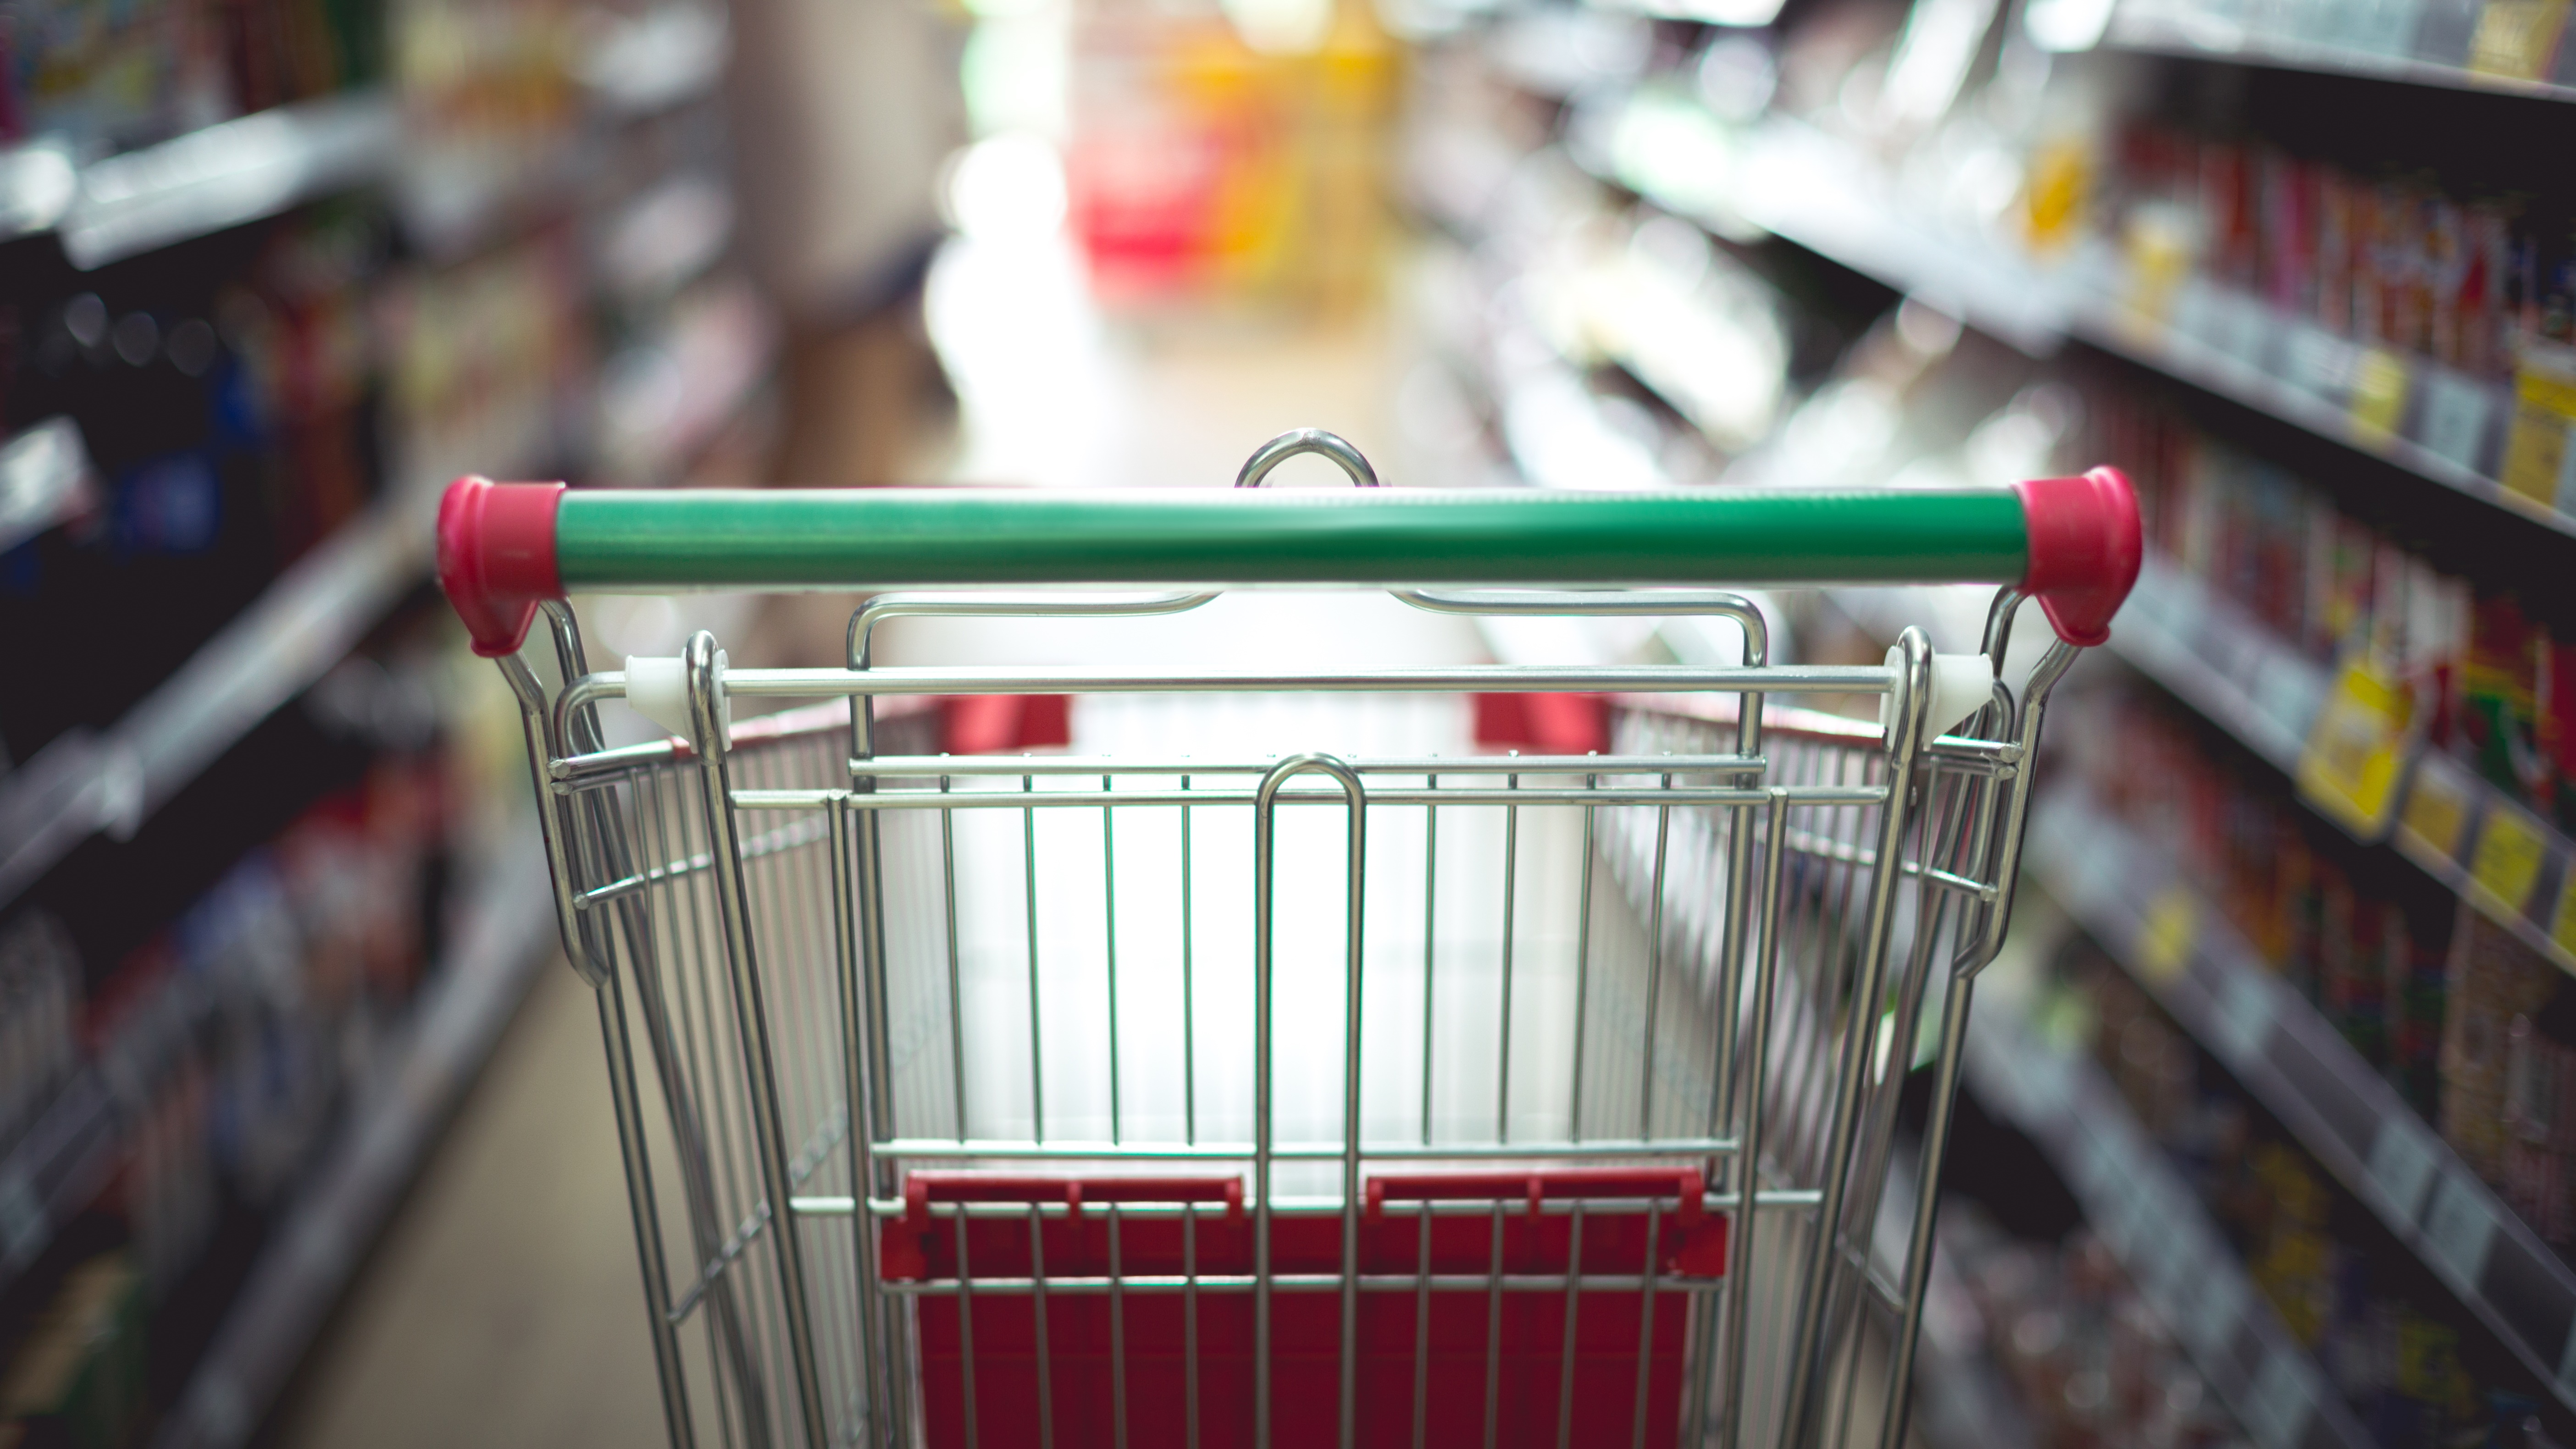 Ministerio de Economía fortalece cotizador online incorporando monitoreo de valor y disponibilidad de alimentos y productos esenciales en supermercados y almacenes